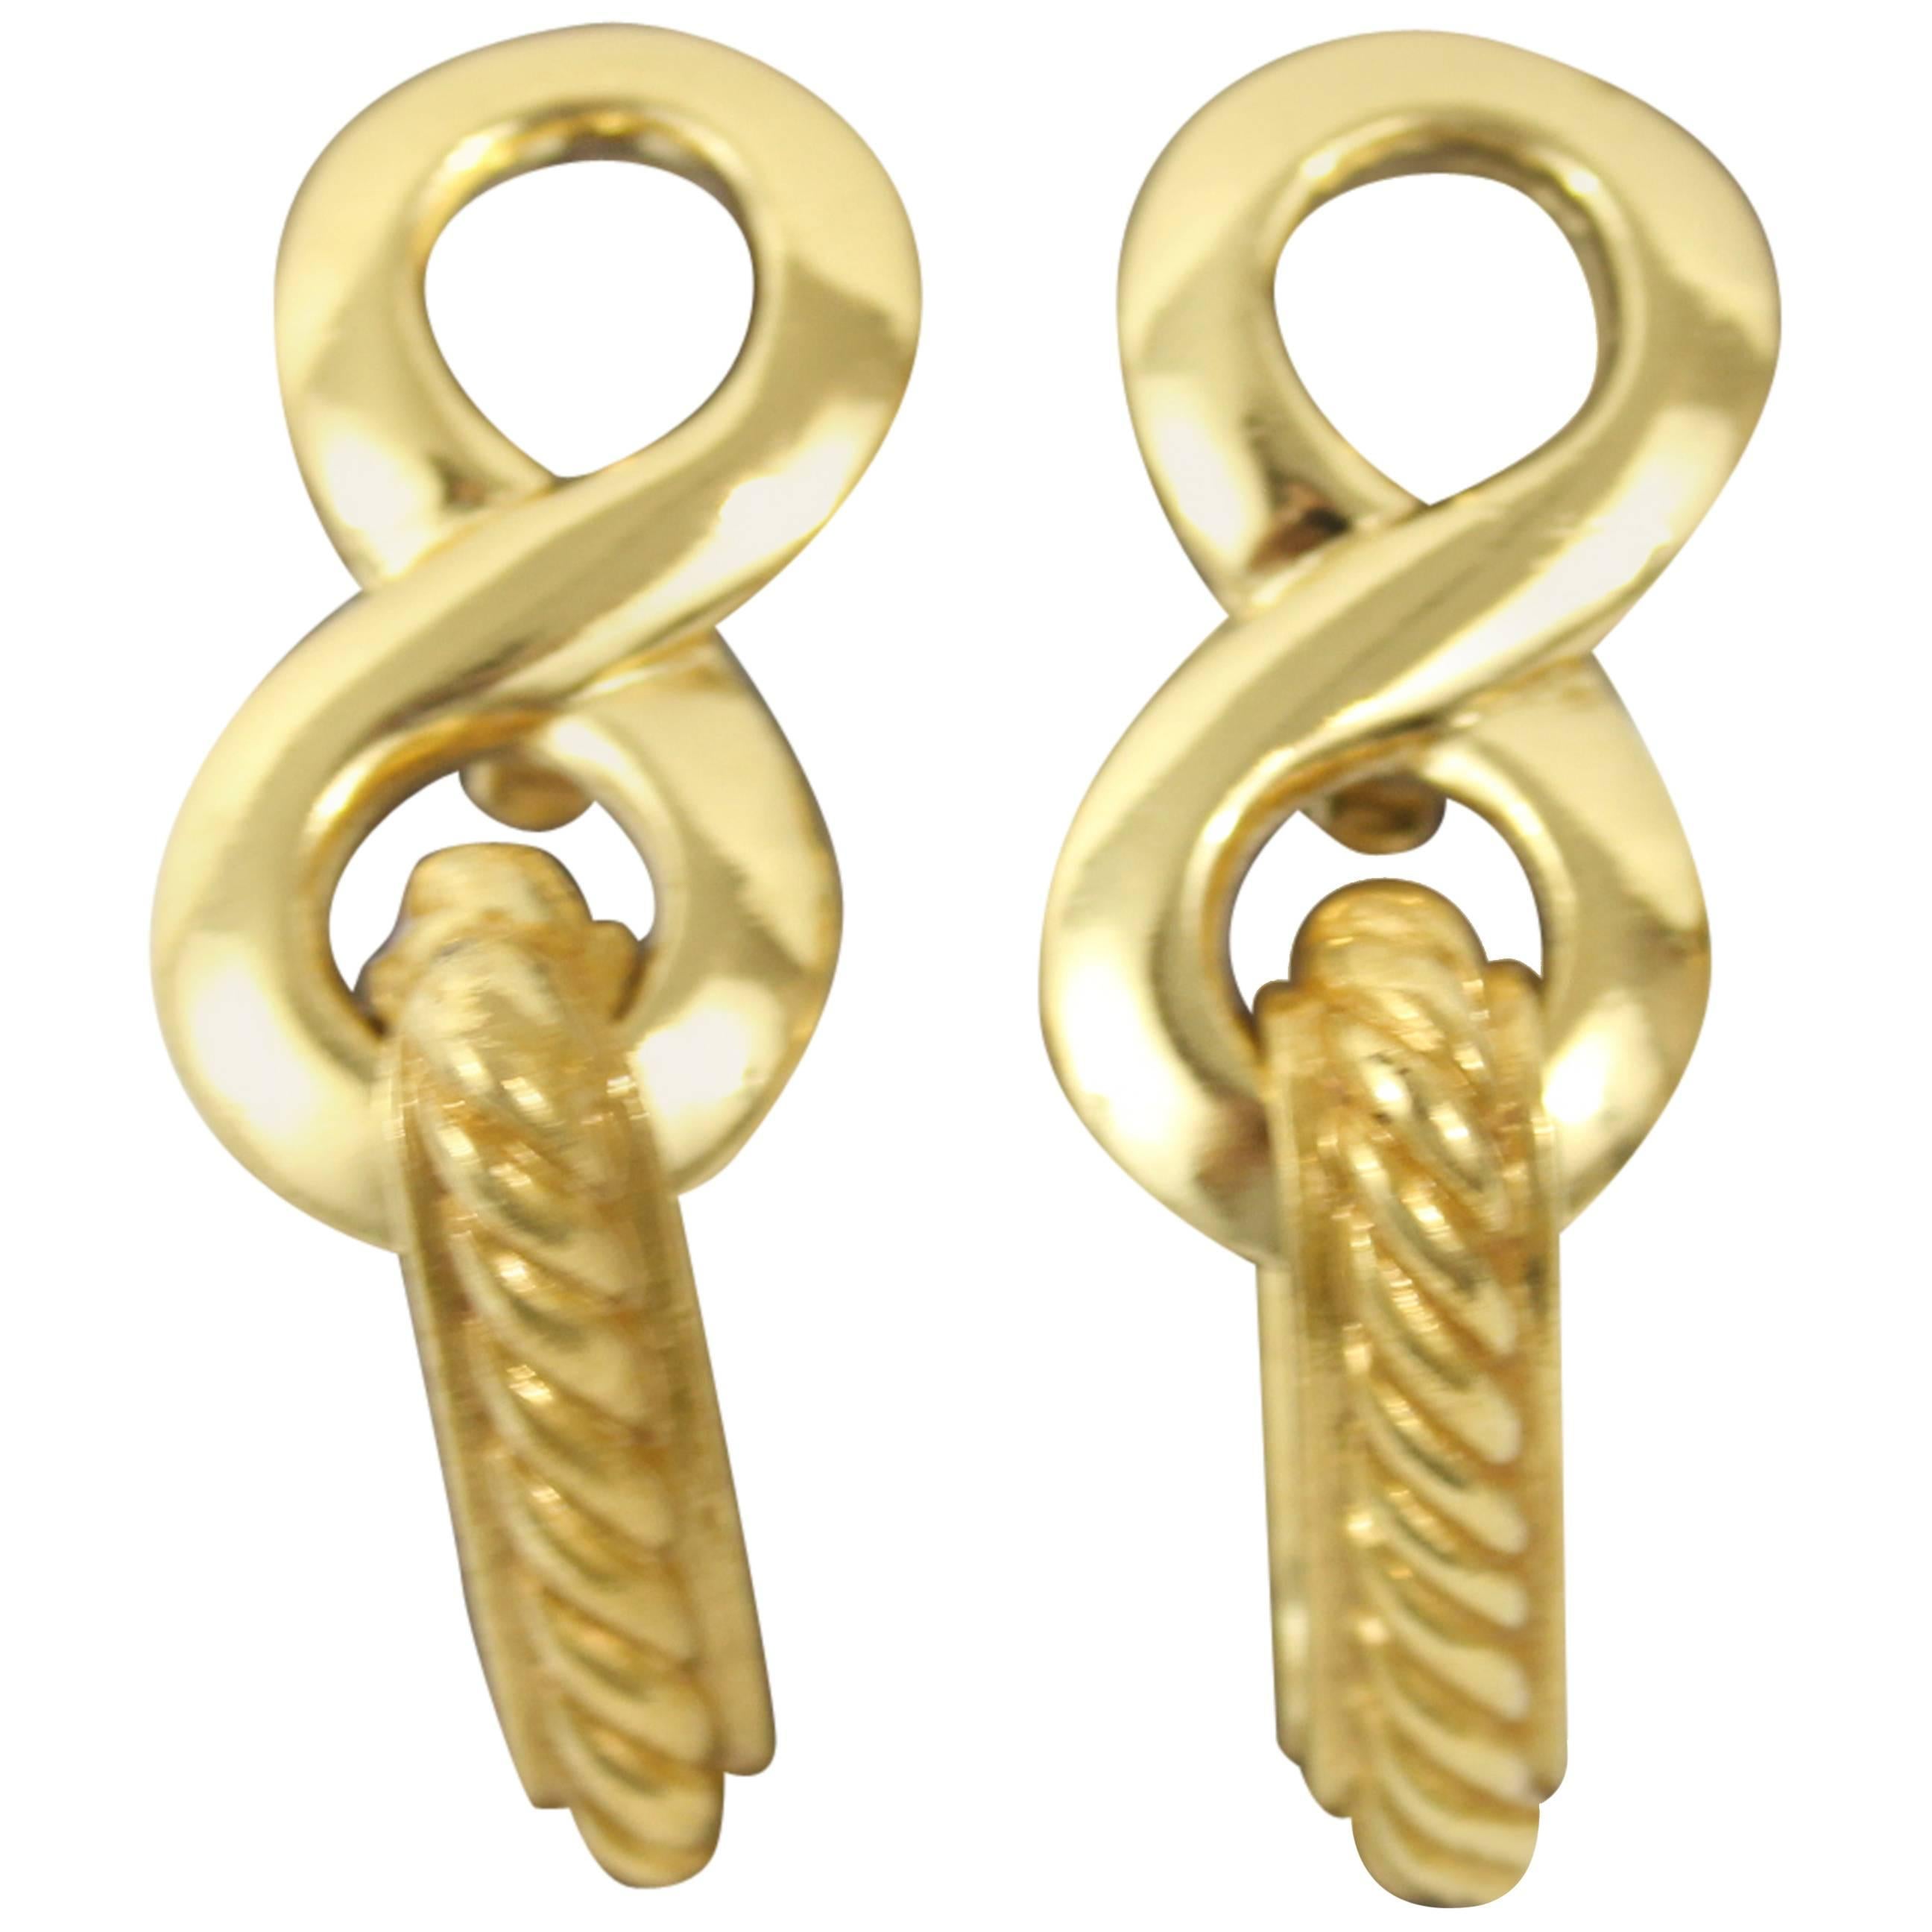 Nice pair of Yves saint Laurent Golden Earrings